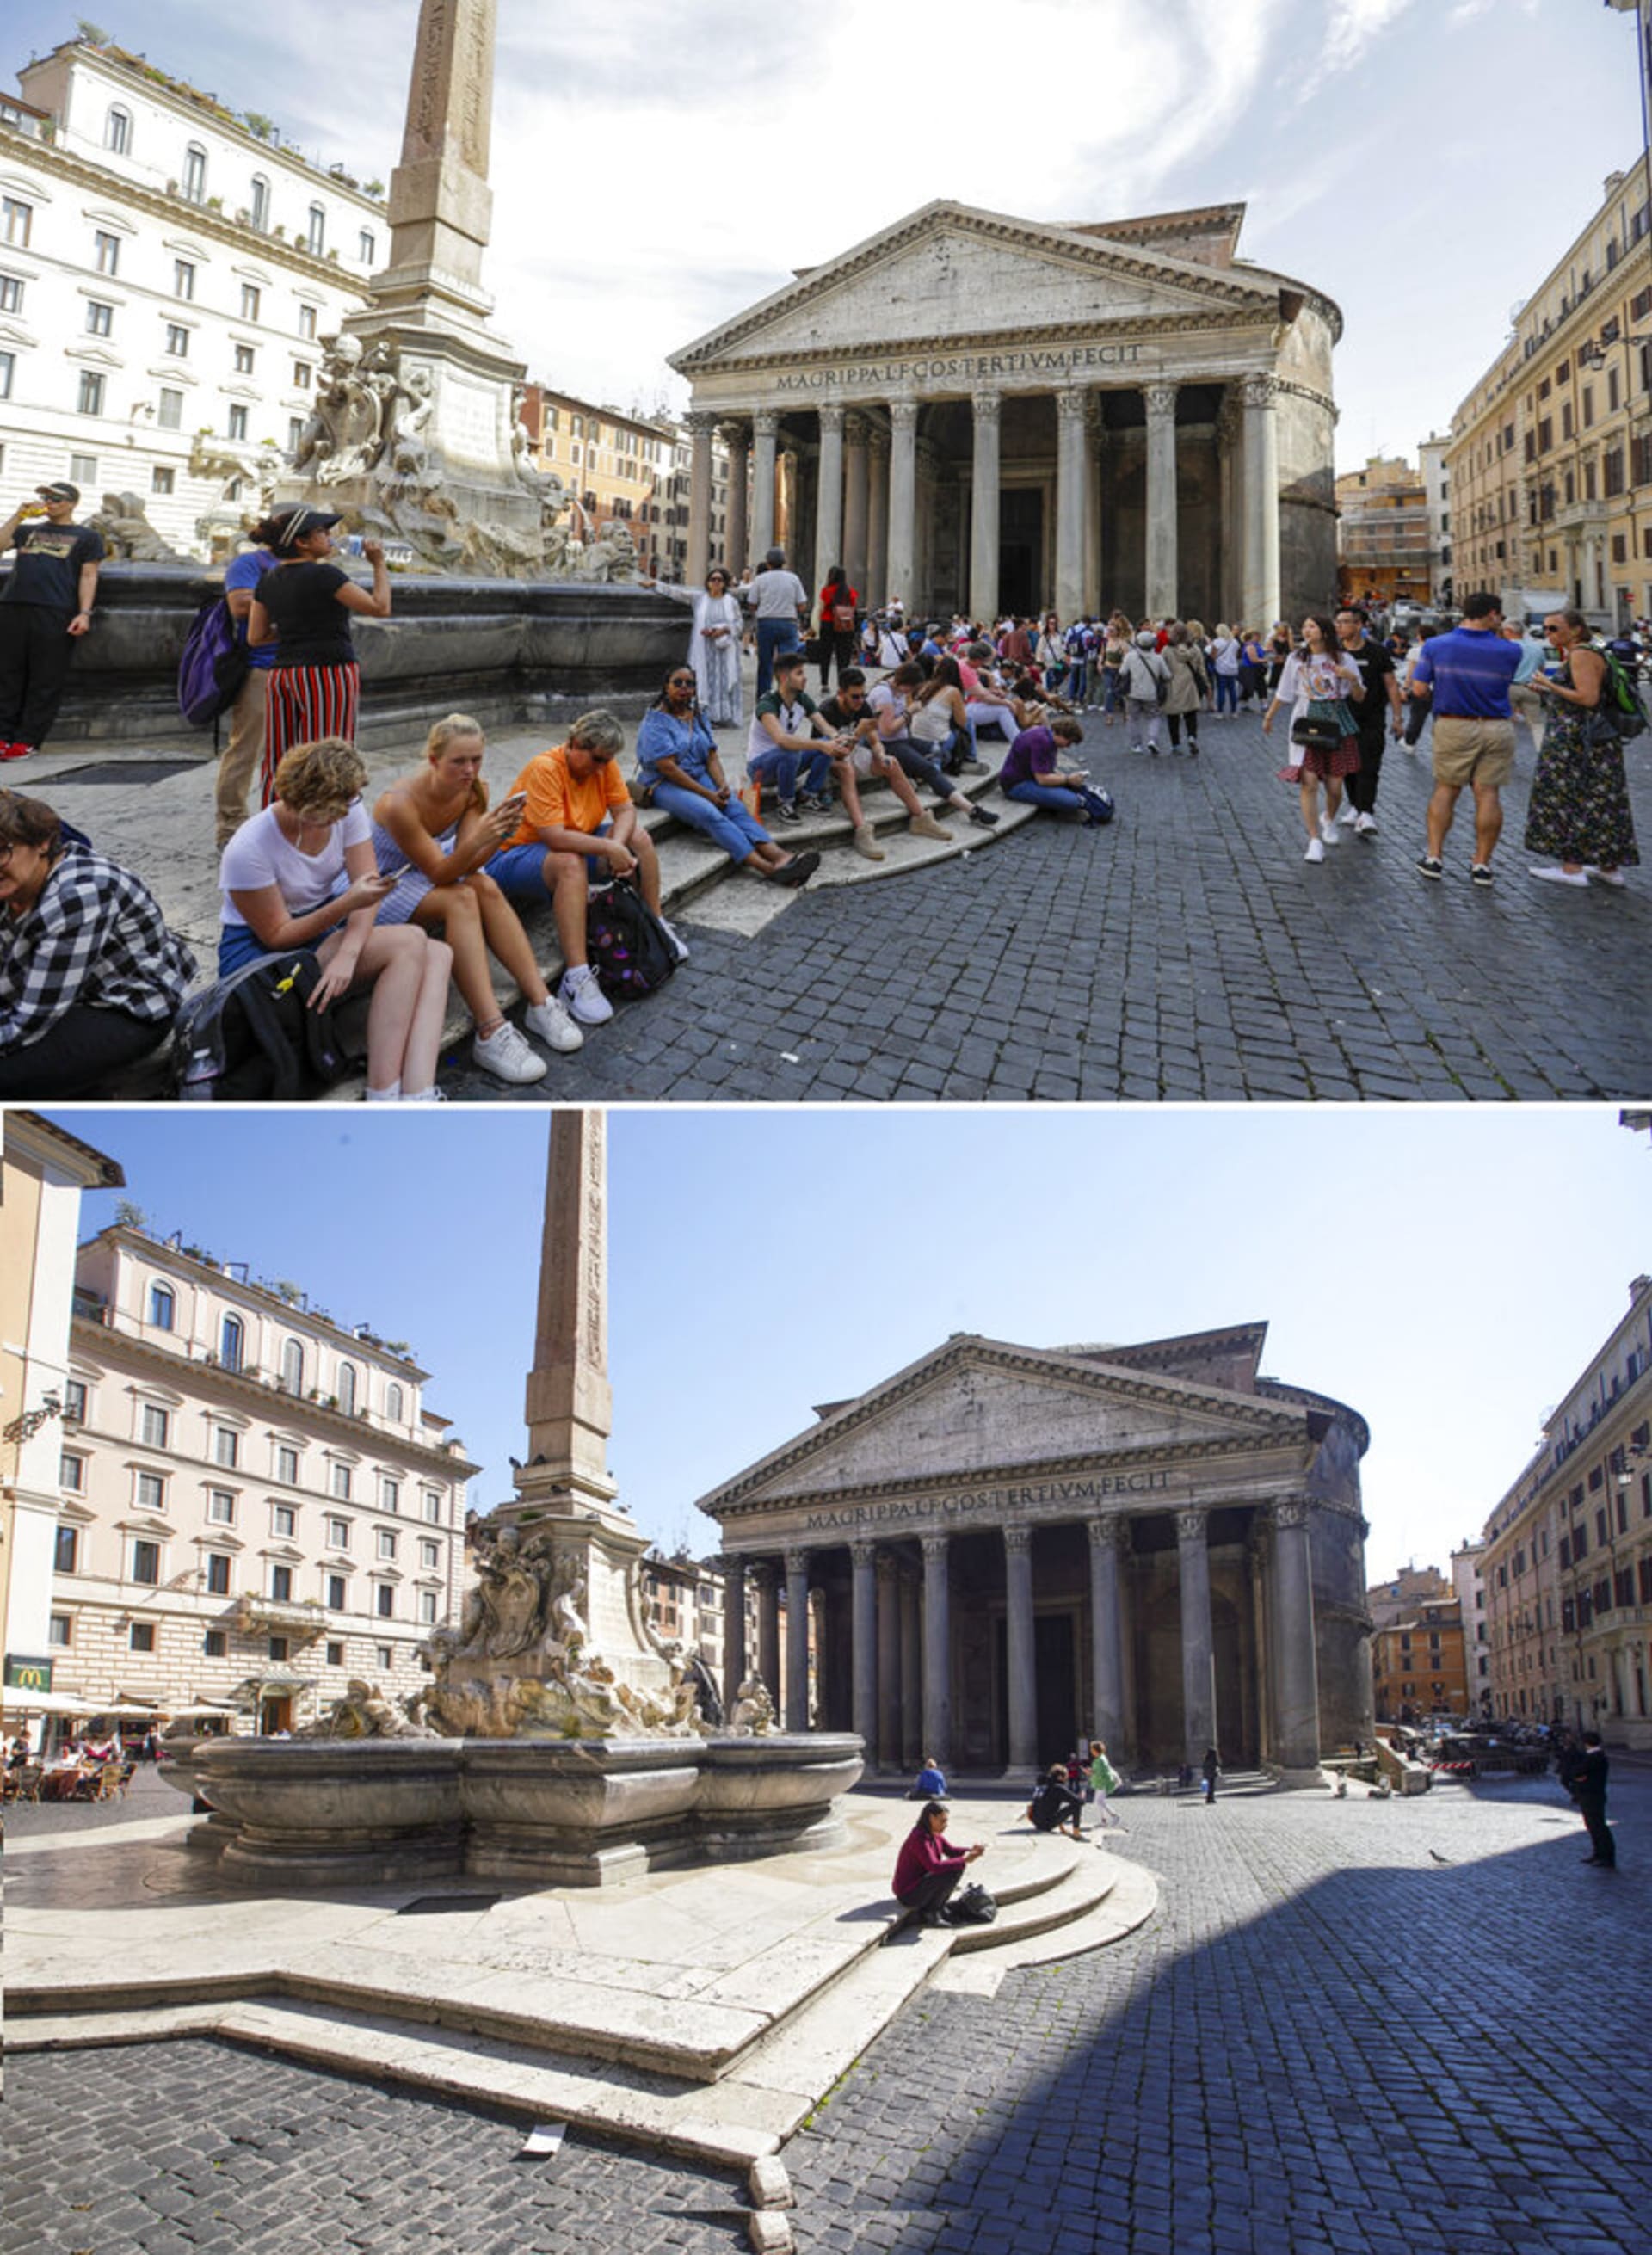 Pantheon v Římě (dříve a nyní)